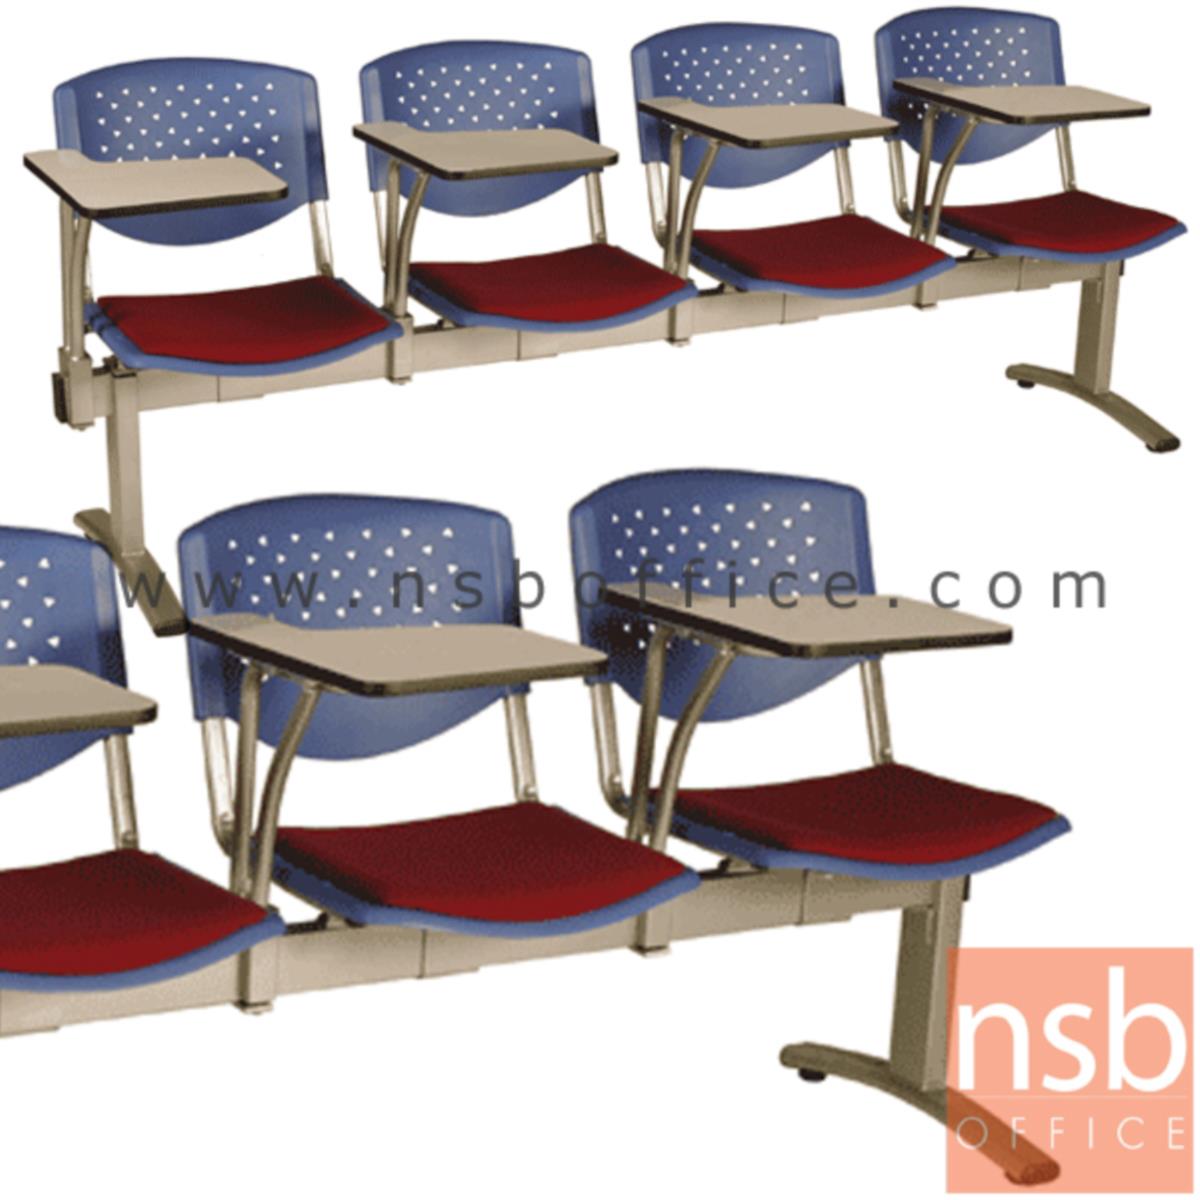 B17A017:เก้าอี้เลคเชอร์แถวเฟรมโพลี่หุ้มเบาะ รุ่น D836 2 ,3 และ 4 ที่นั่ง ขาเหล็กพ่นสีเทา